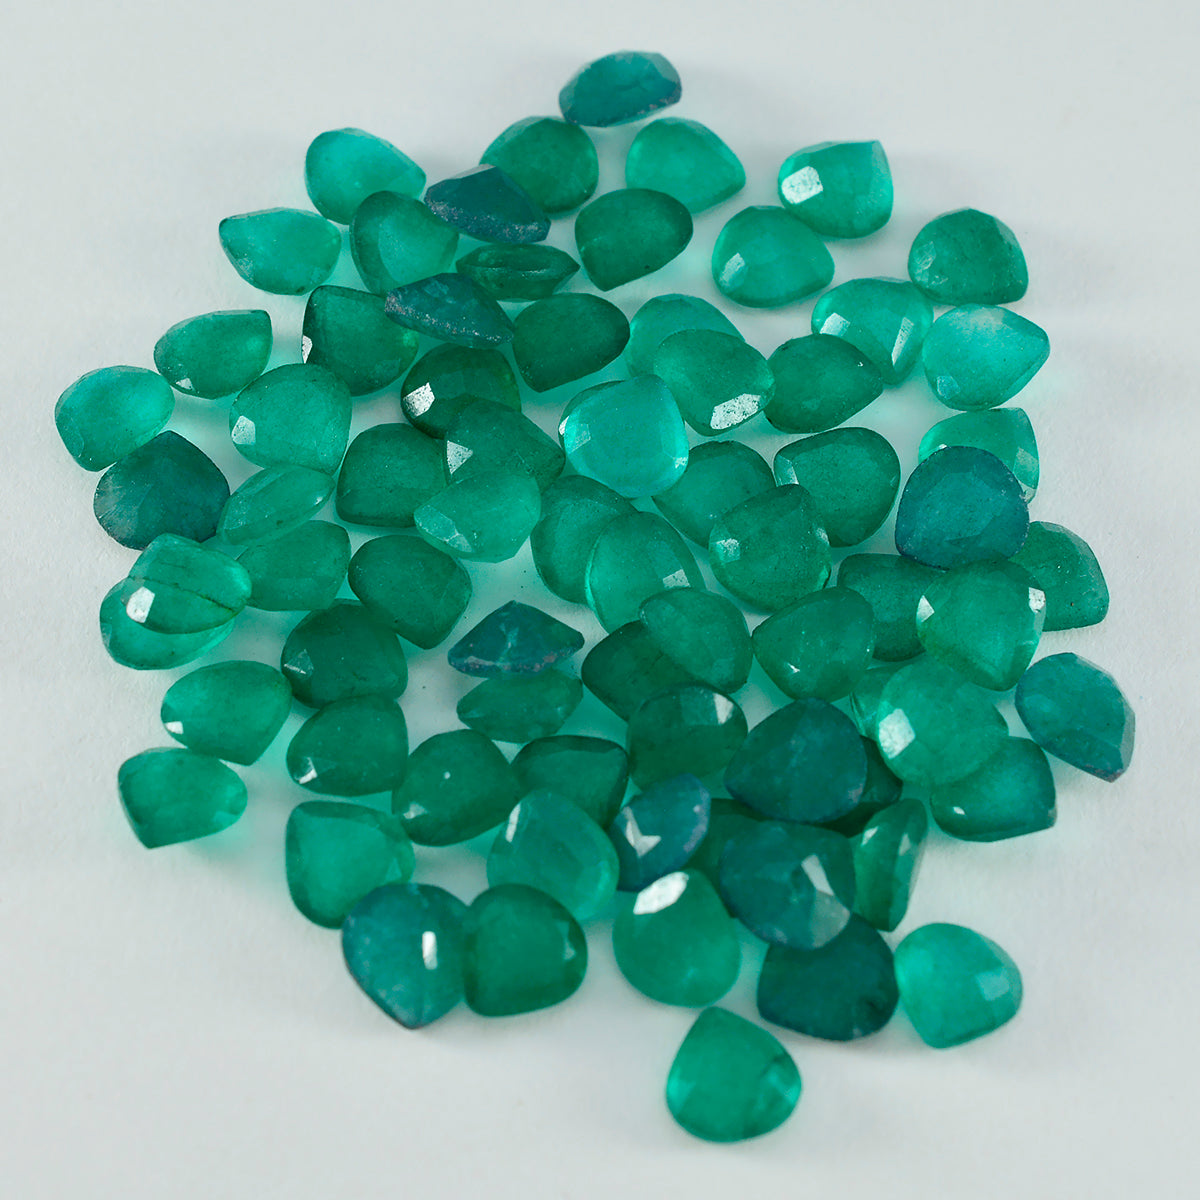 Riyogems 1 pieza jaspe verde auténtico facetado 8x8mm forma de corazón gemas sueltas de calidad